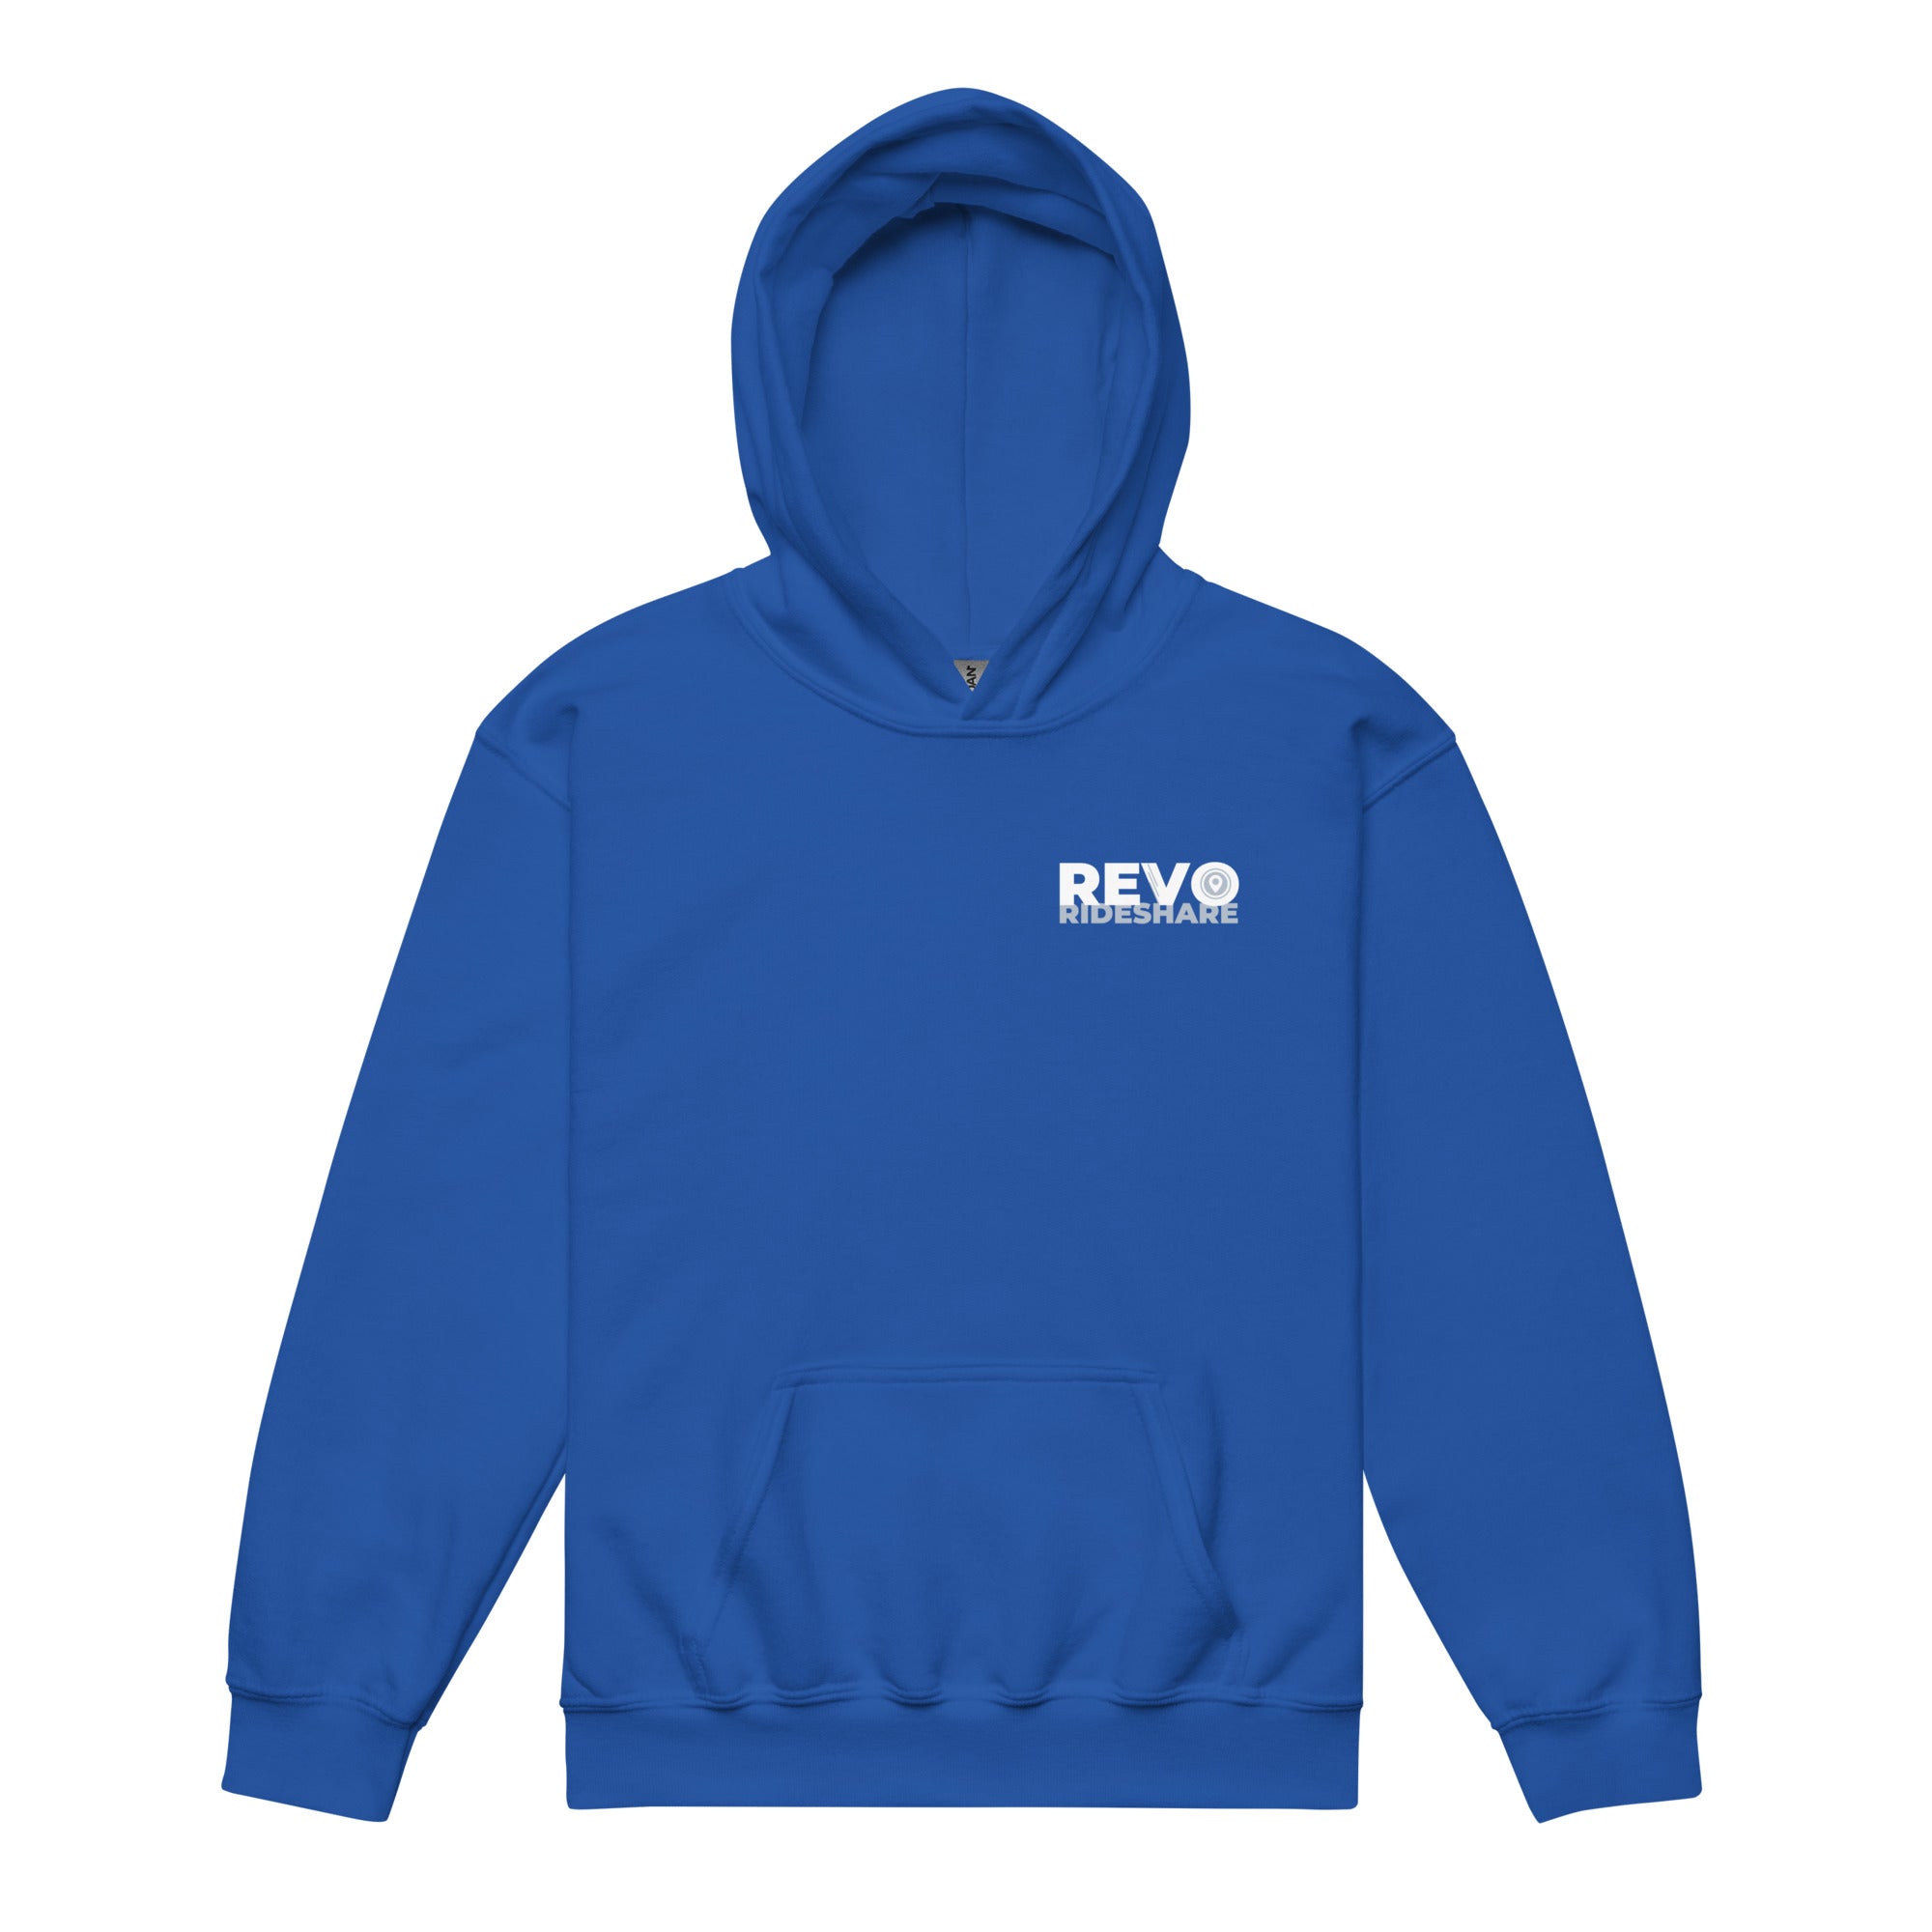 REVO Rideshare Youth heavy blend hoodie